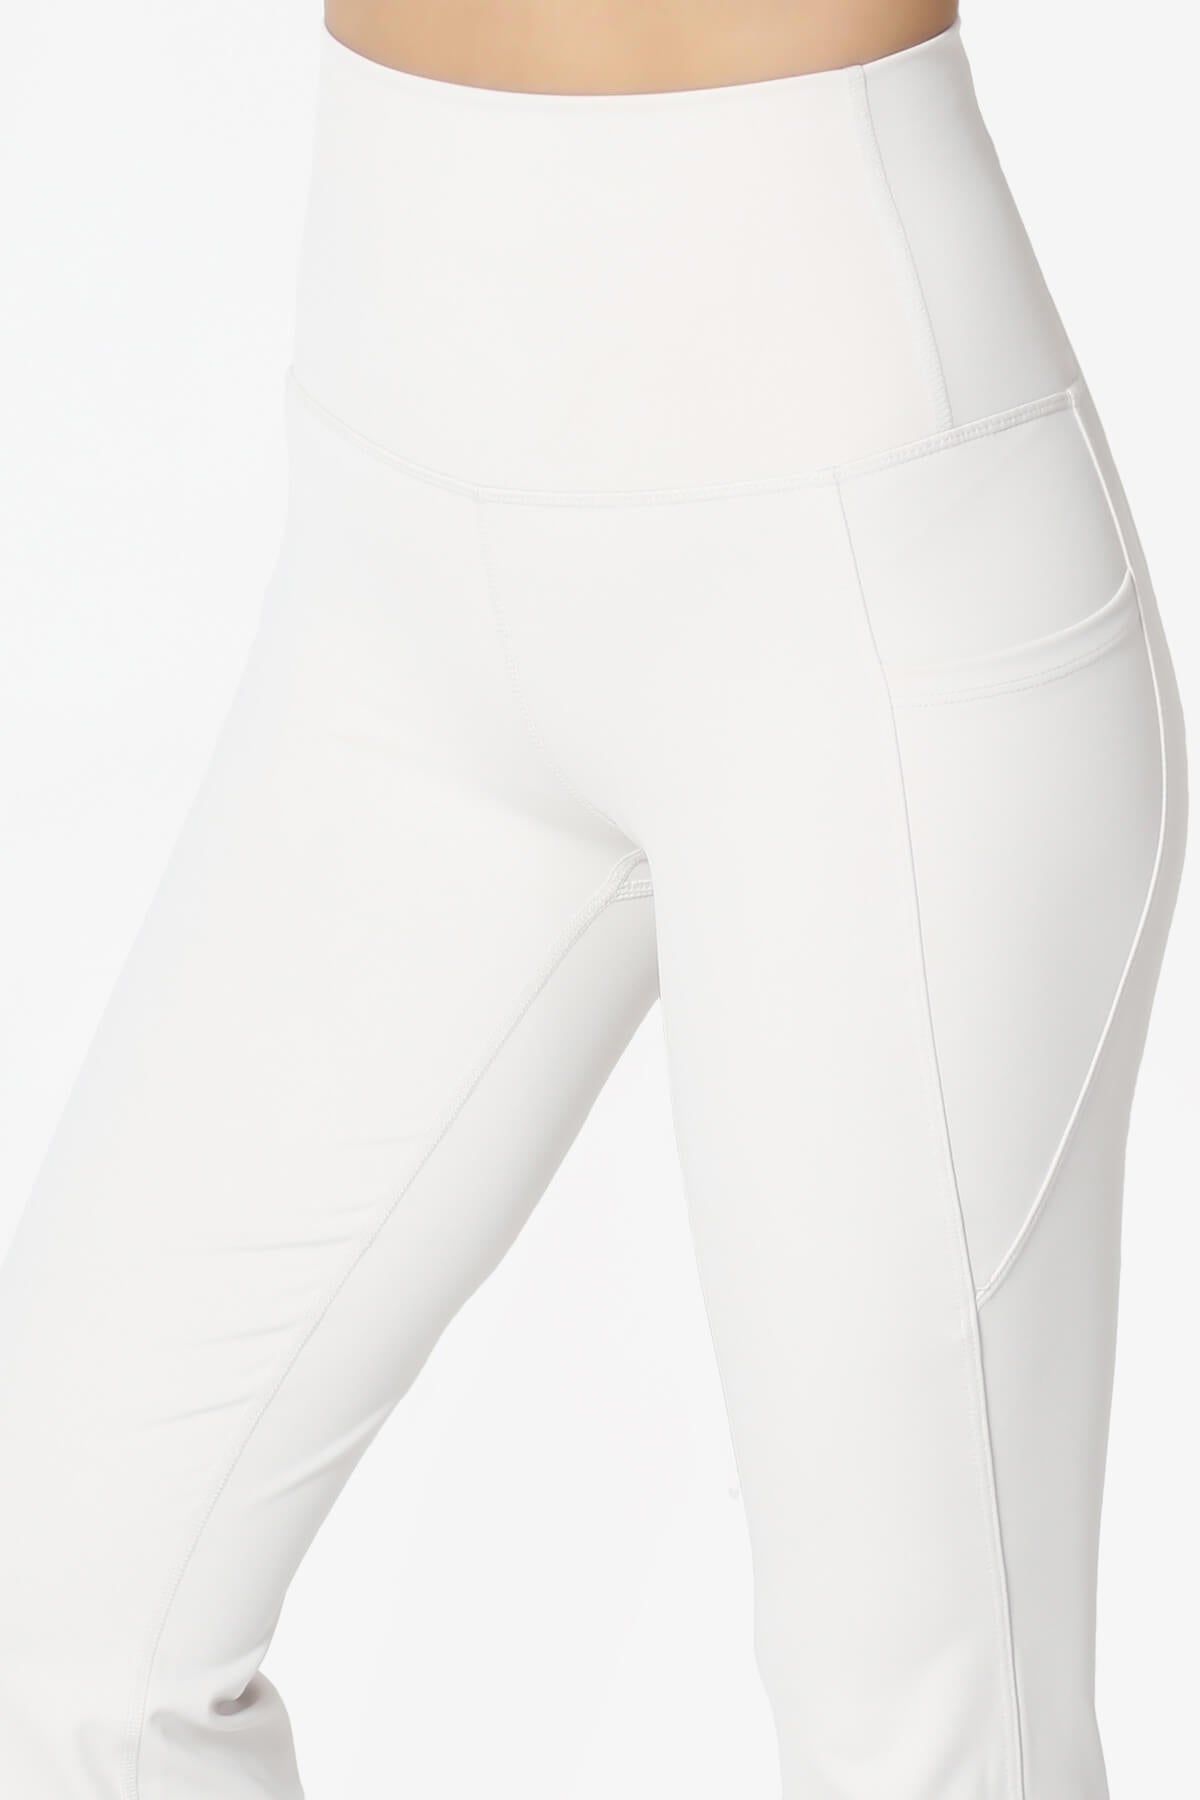 Gemma Athletic Pocket Flare Yoga Pants BONE_5